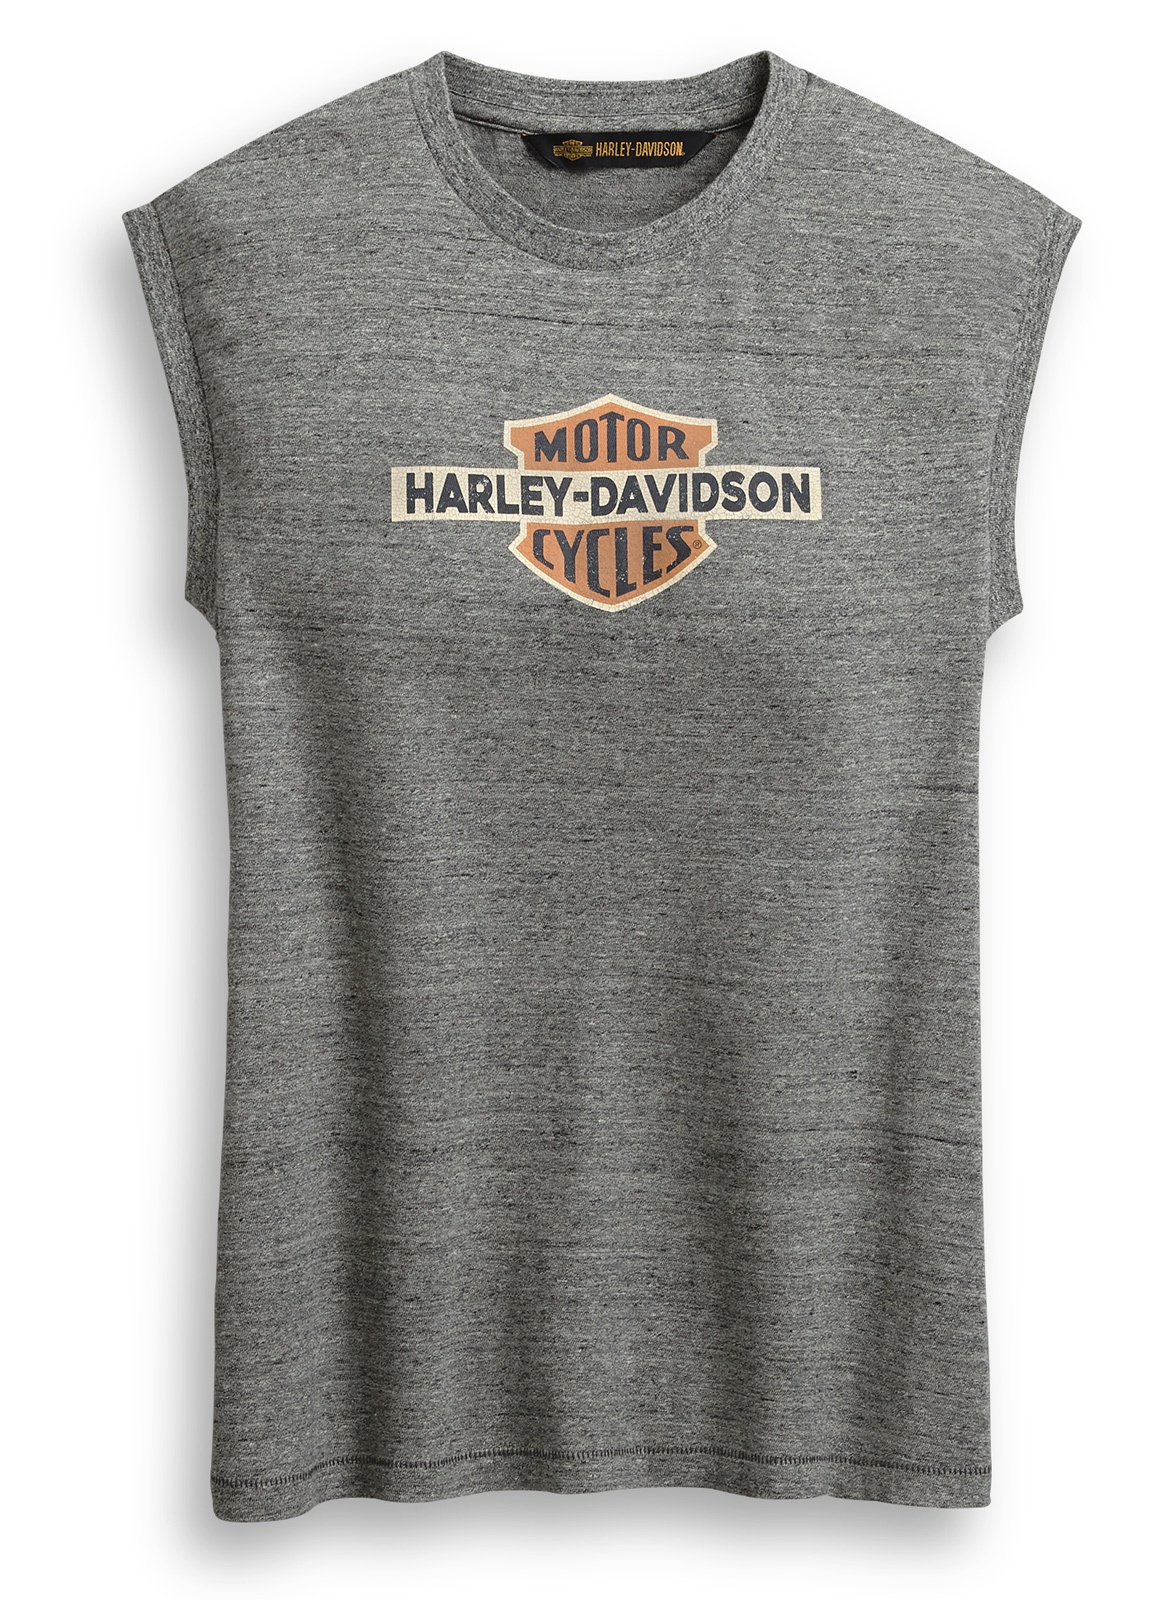 Harley Davidson T Shirt Grey Promotion Off68